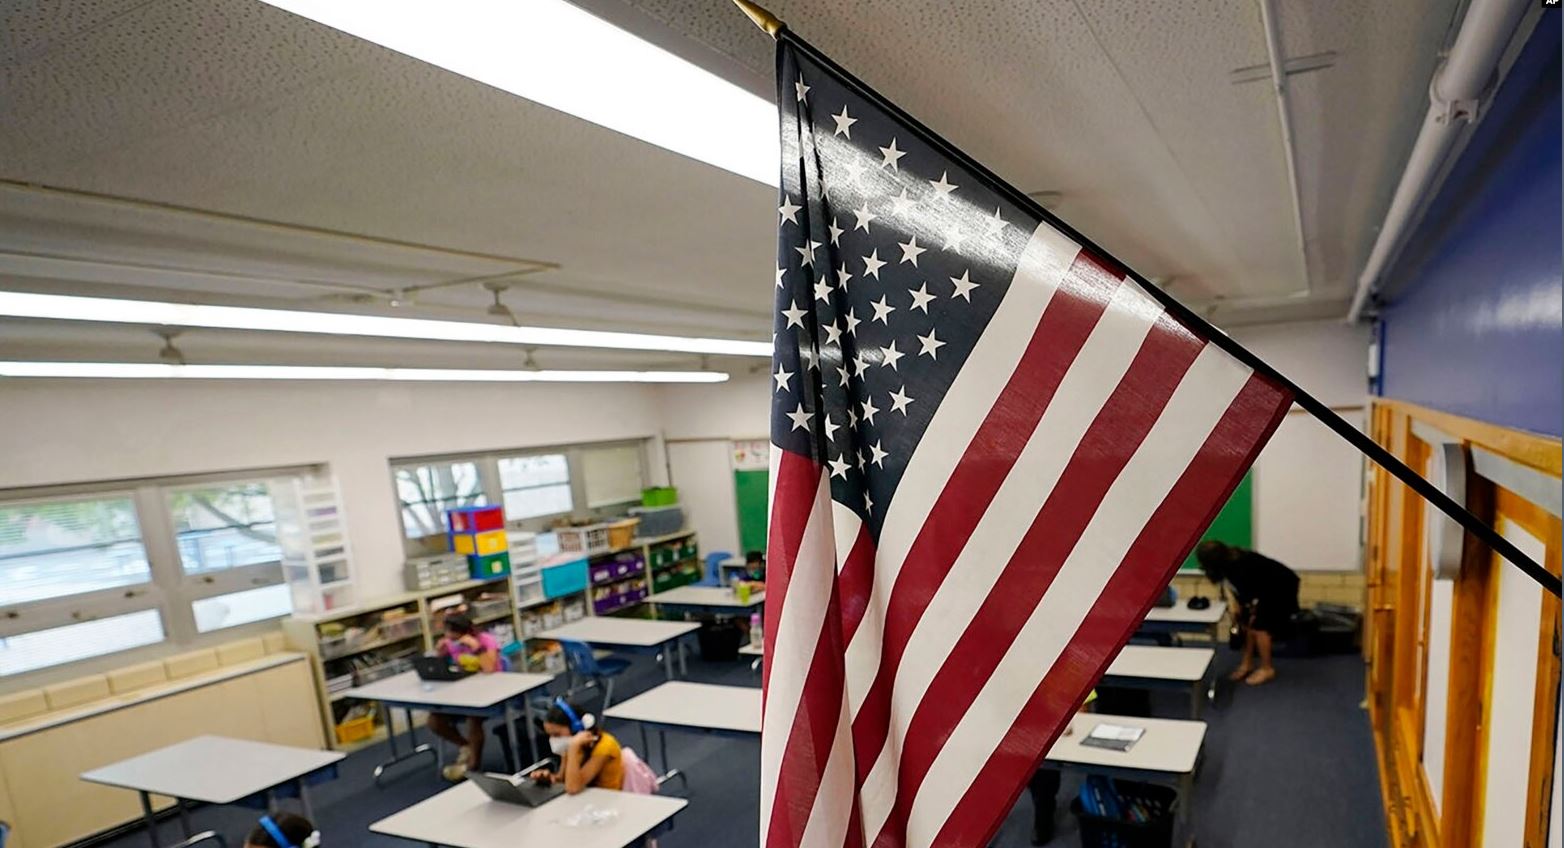 SHBA/ Shkollat në Kolorado përballen me fluksin e nxënësve emigrantë